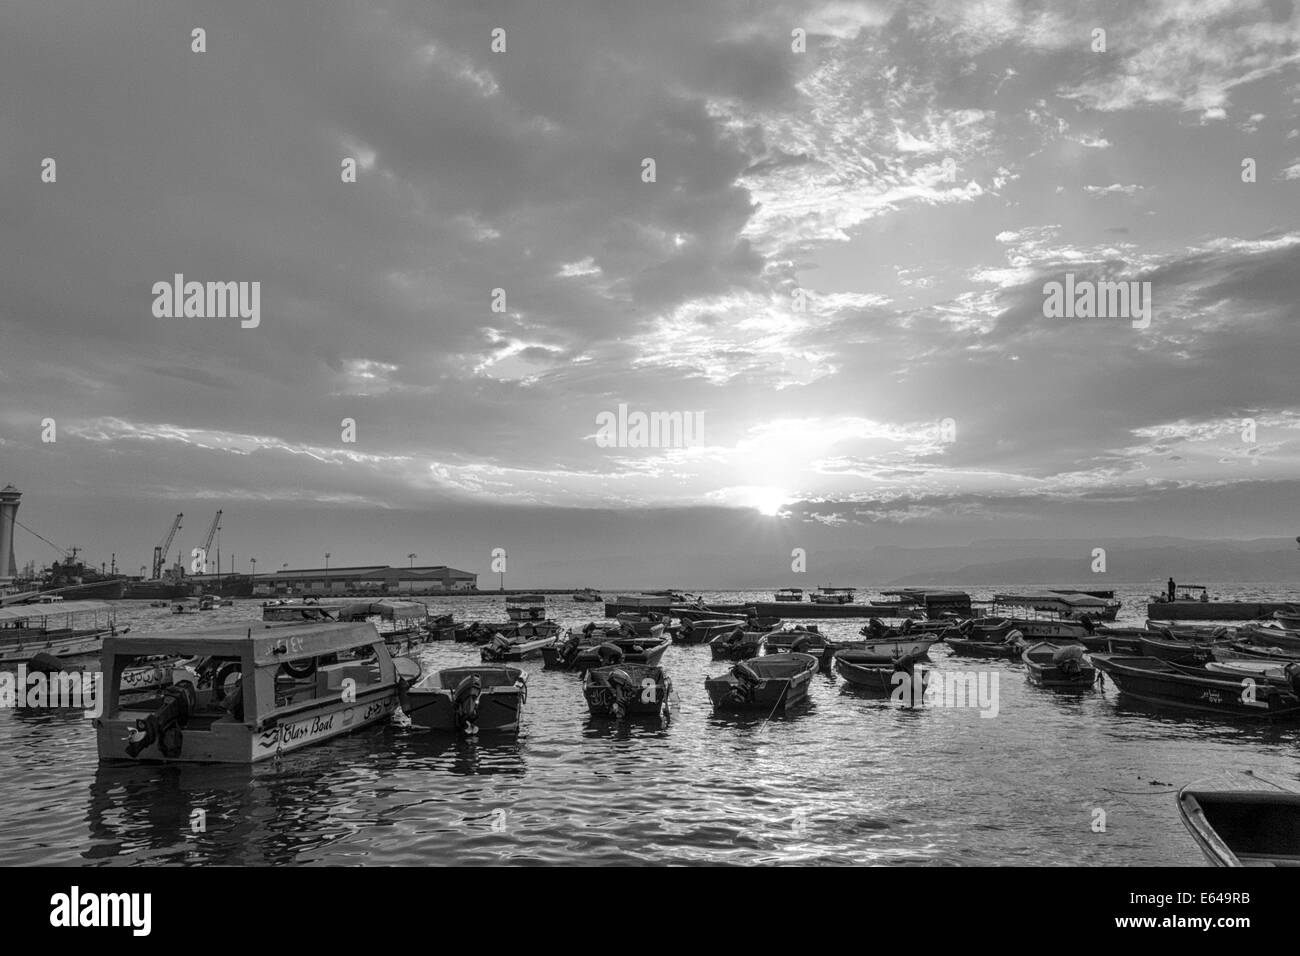 Harbour at sunset, Aqaba, Jordan Stock Photo